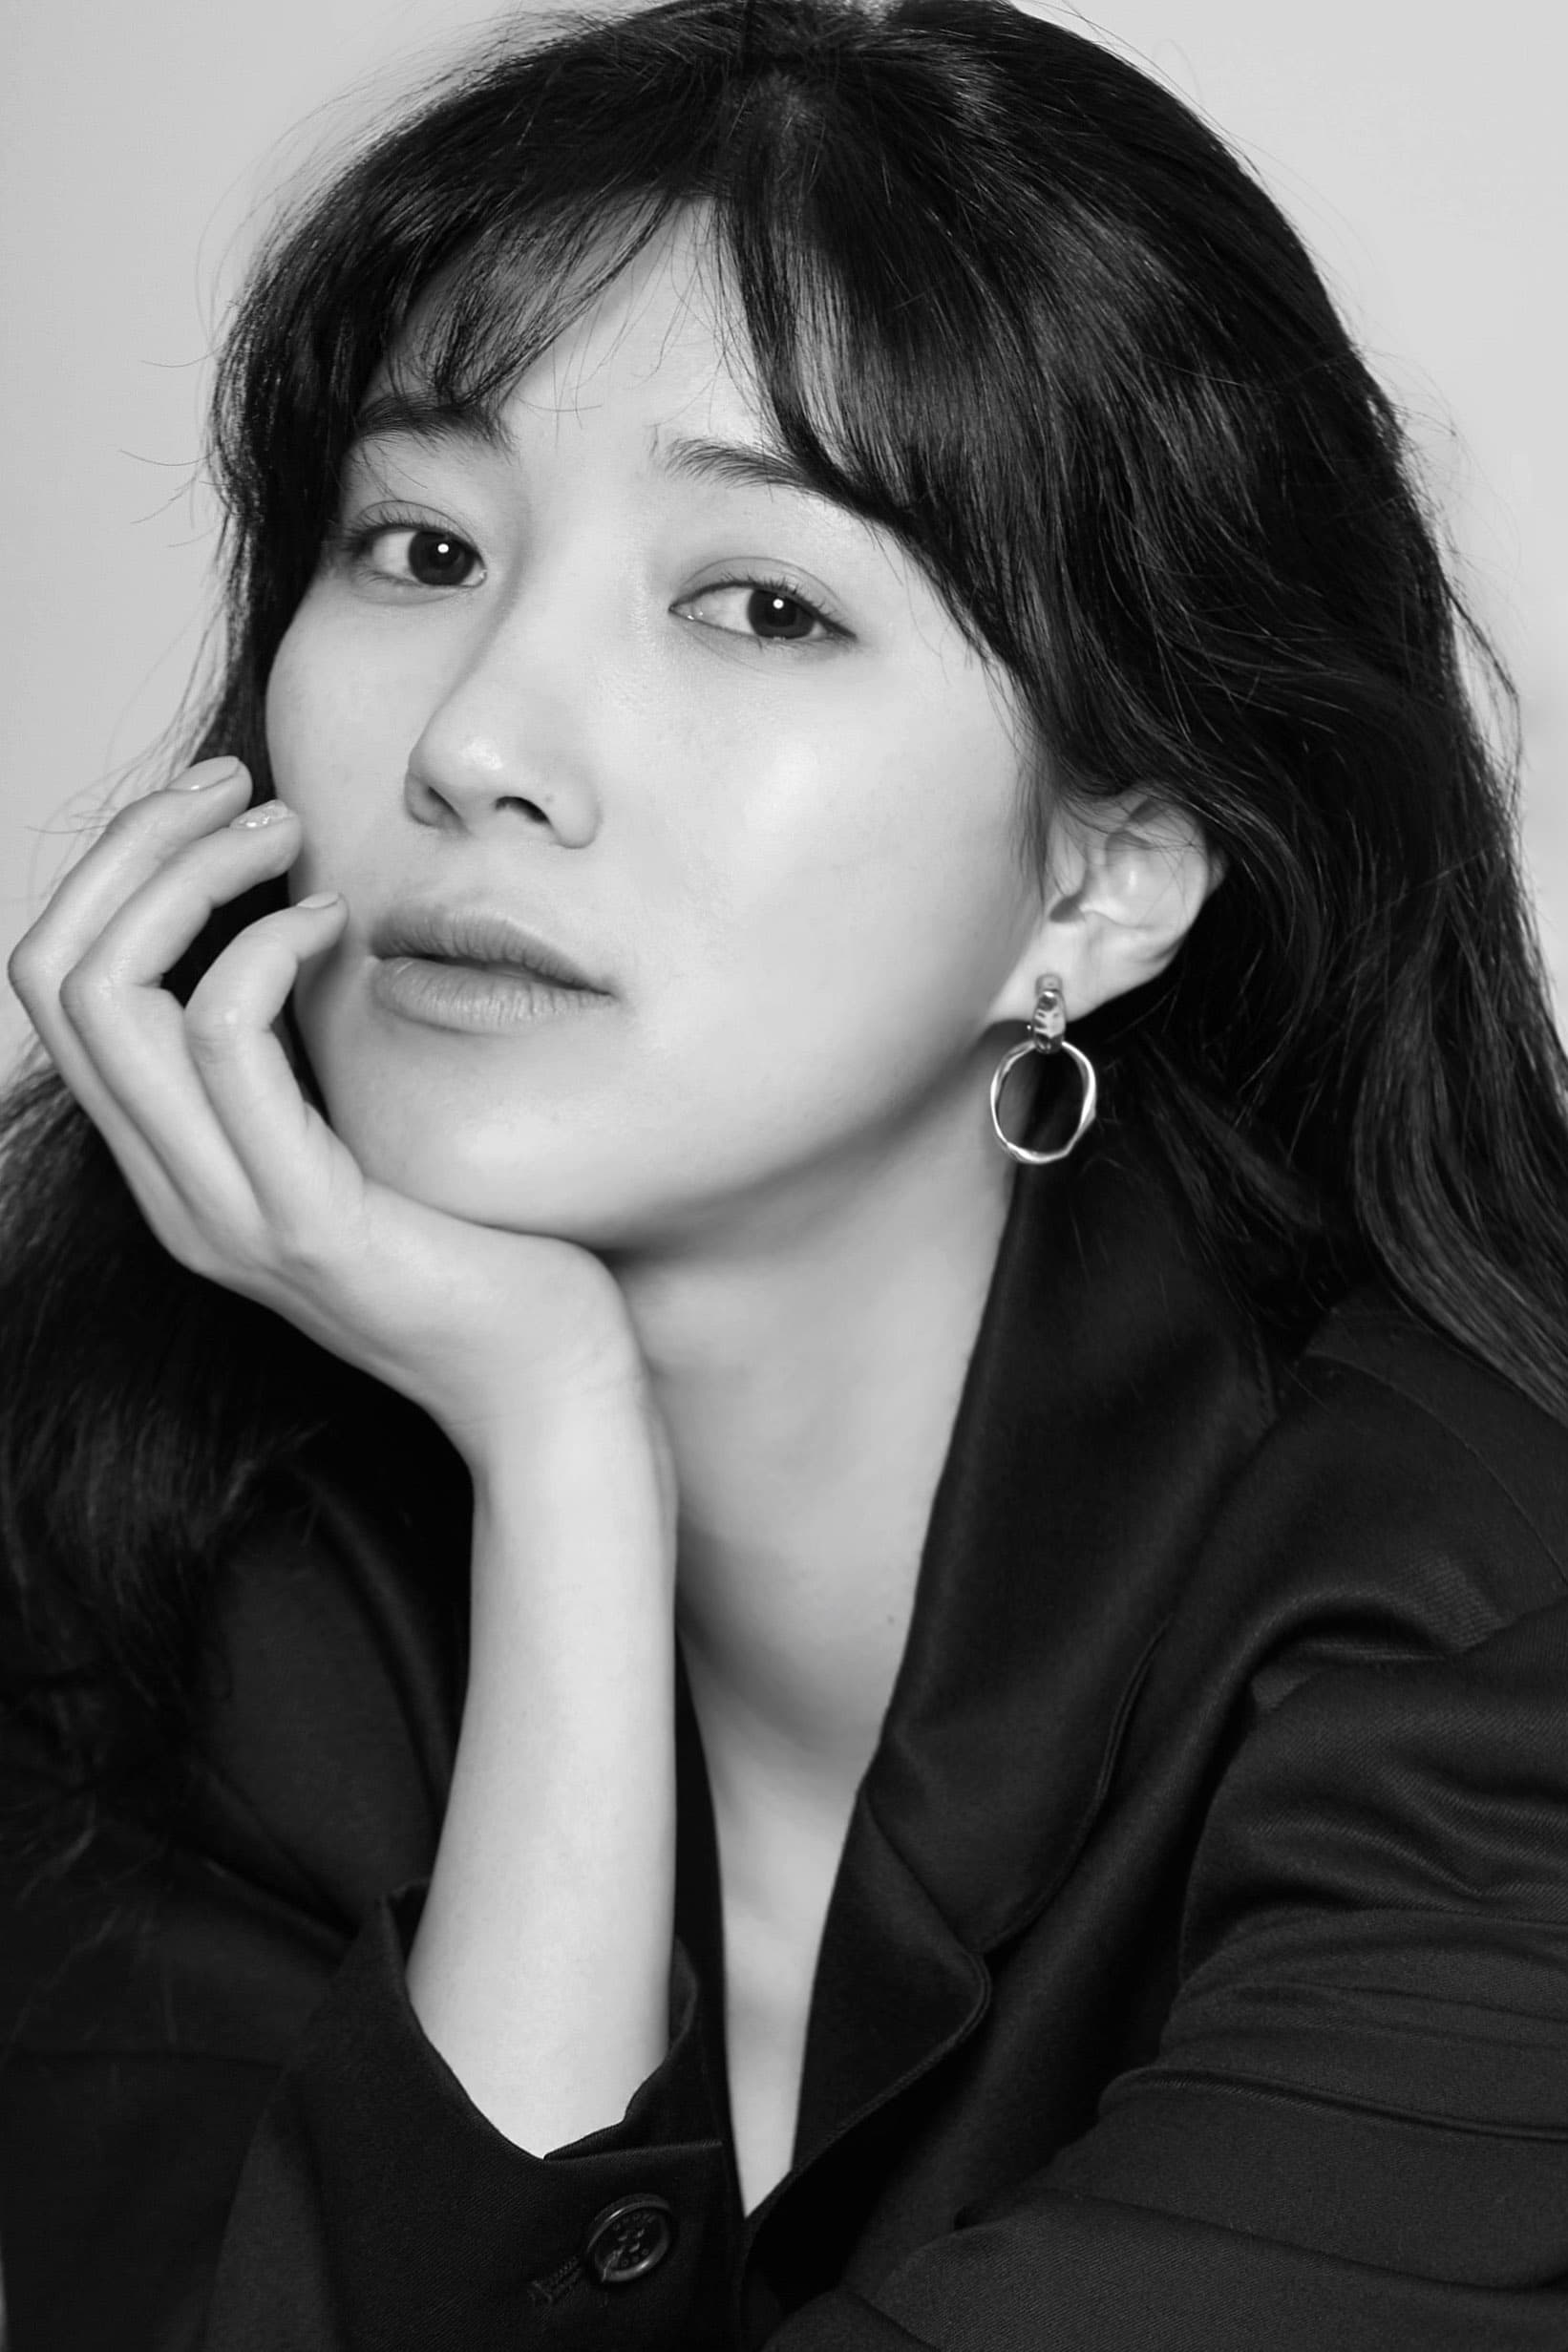 Joo Da-young